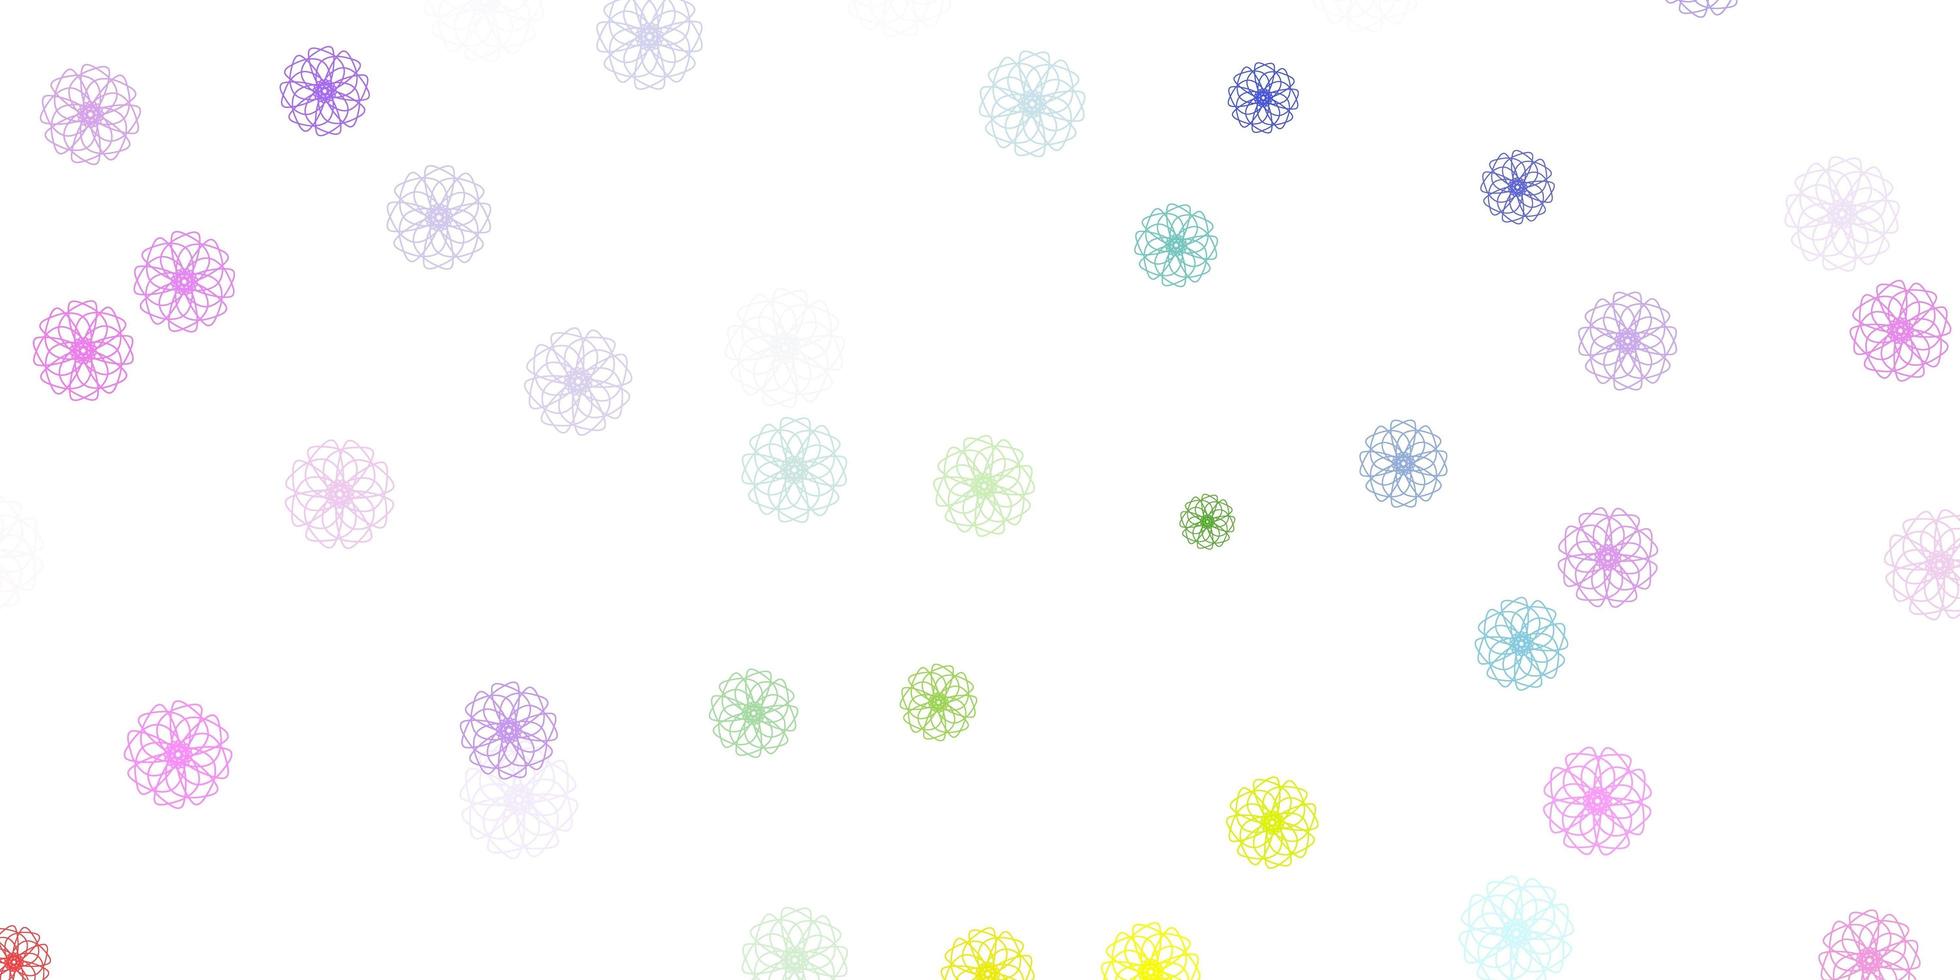 modello di doodle vettoriale multicolore chiaro con fiori.